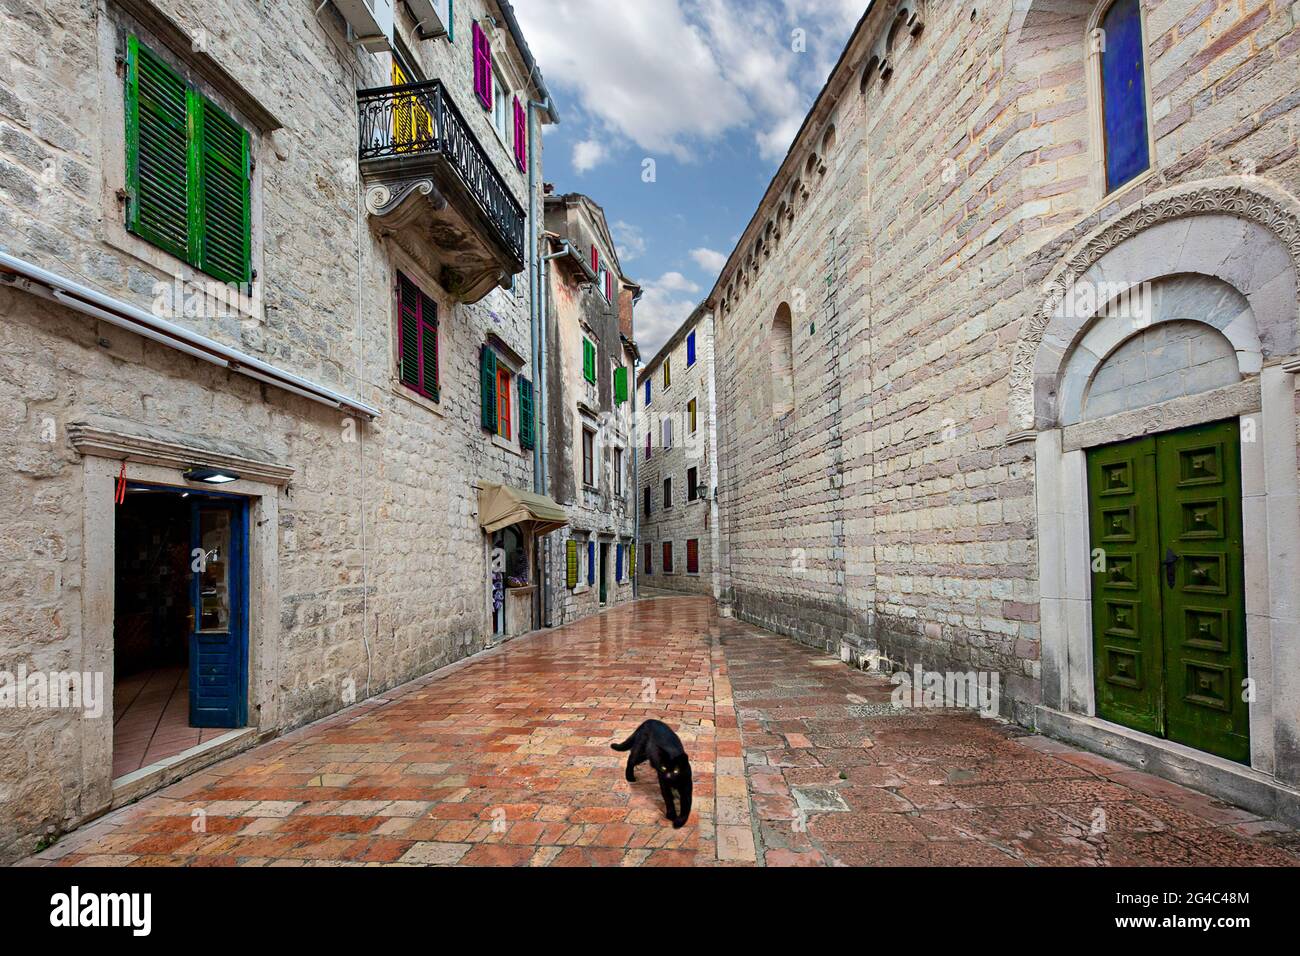 Case storiche con finestre colorate e un gatto nero nella stretta strada nella città vecchia di Cattaro, Montenegro Foto Stock